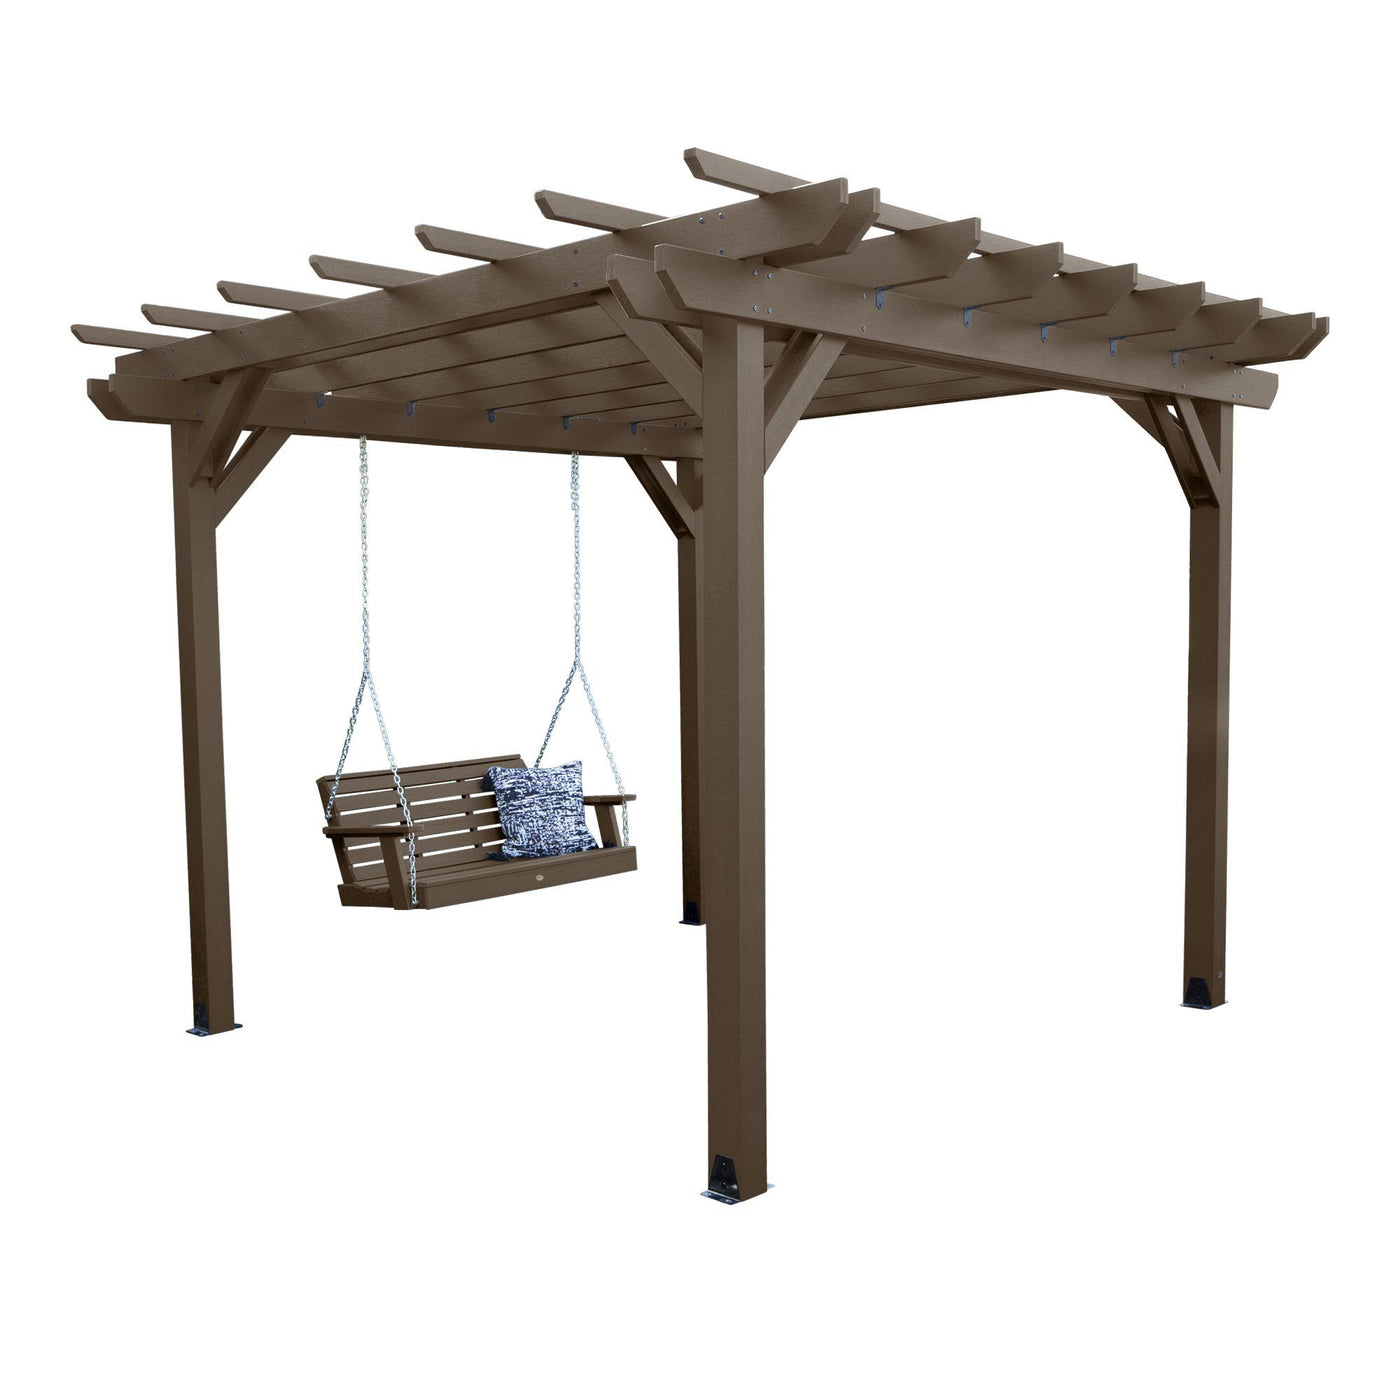 Bodhi 12’ x 12’ DIY Pergola with 4’ Weatherly Porch Swing Highwood USA Weathered Acorn 